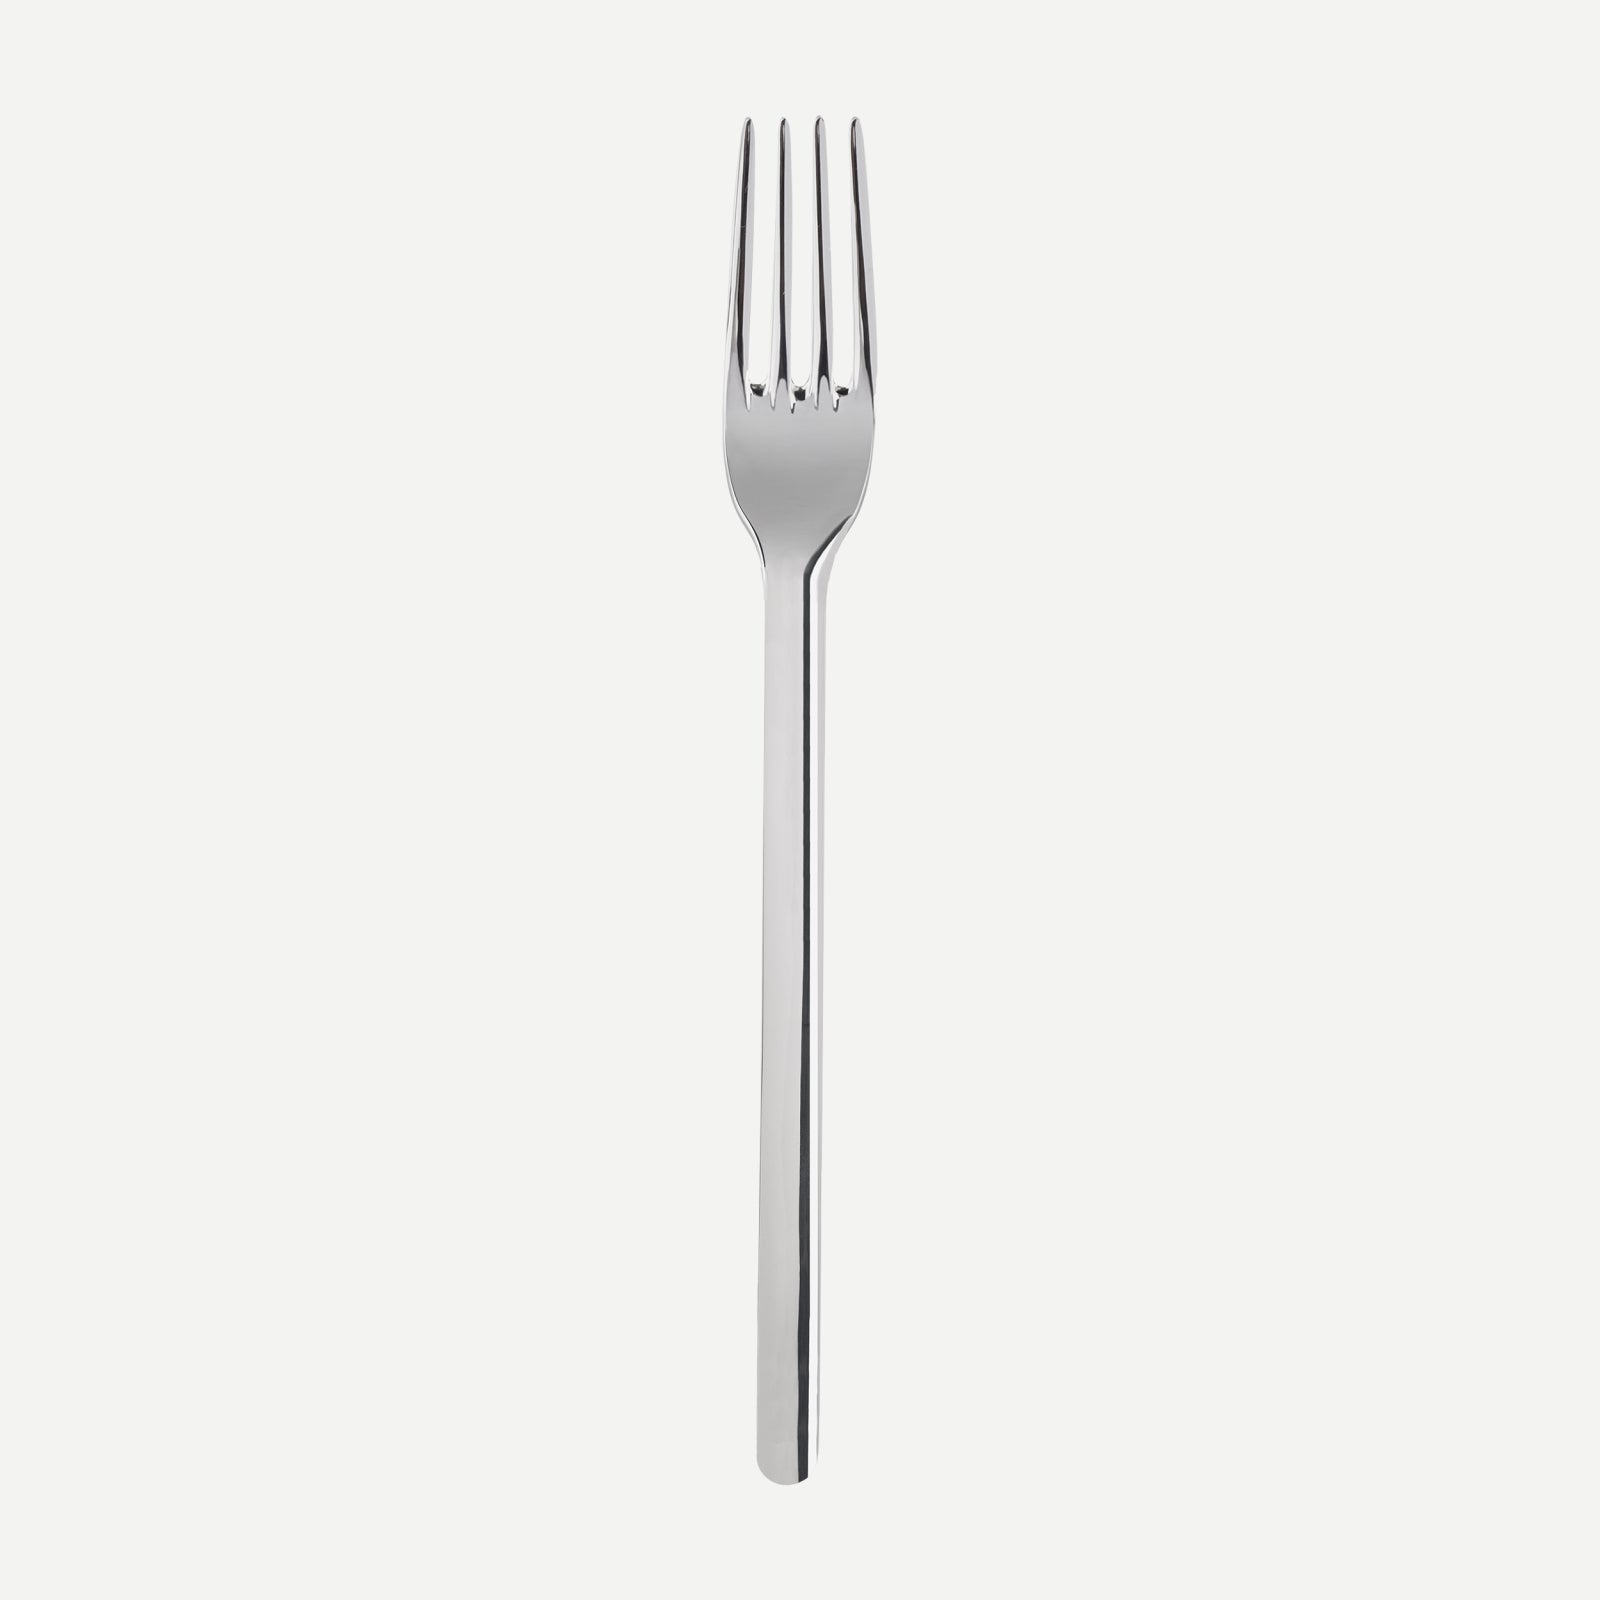 Dinner fork - Loft - Stainless steel